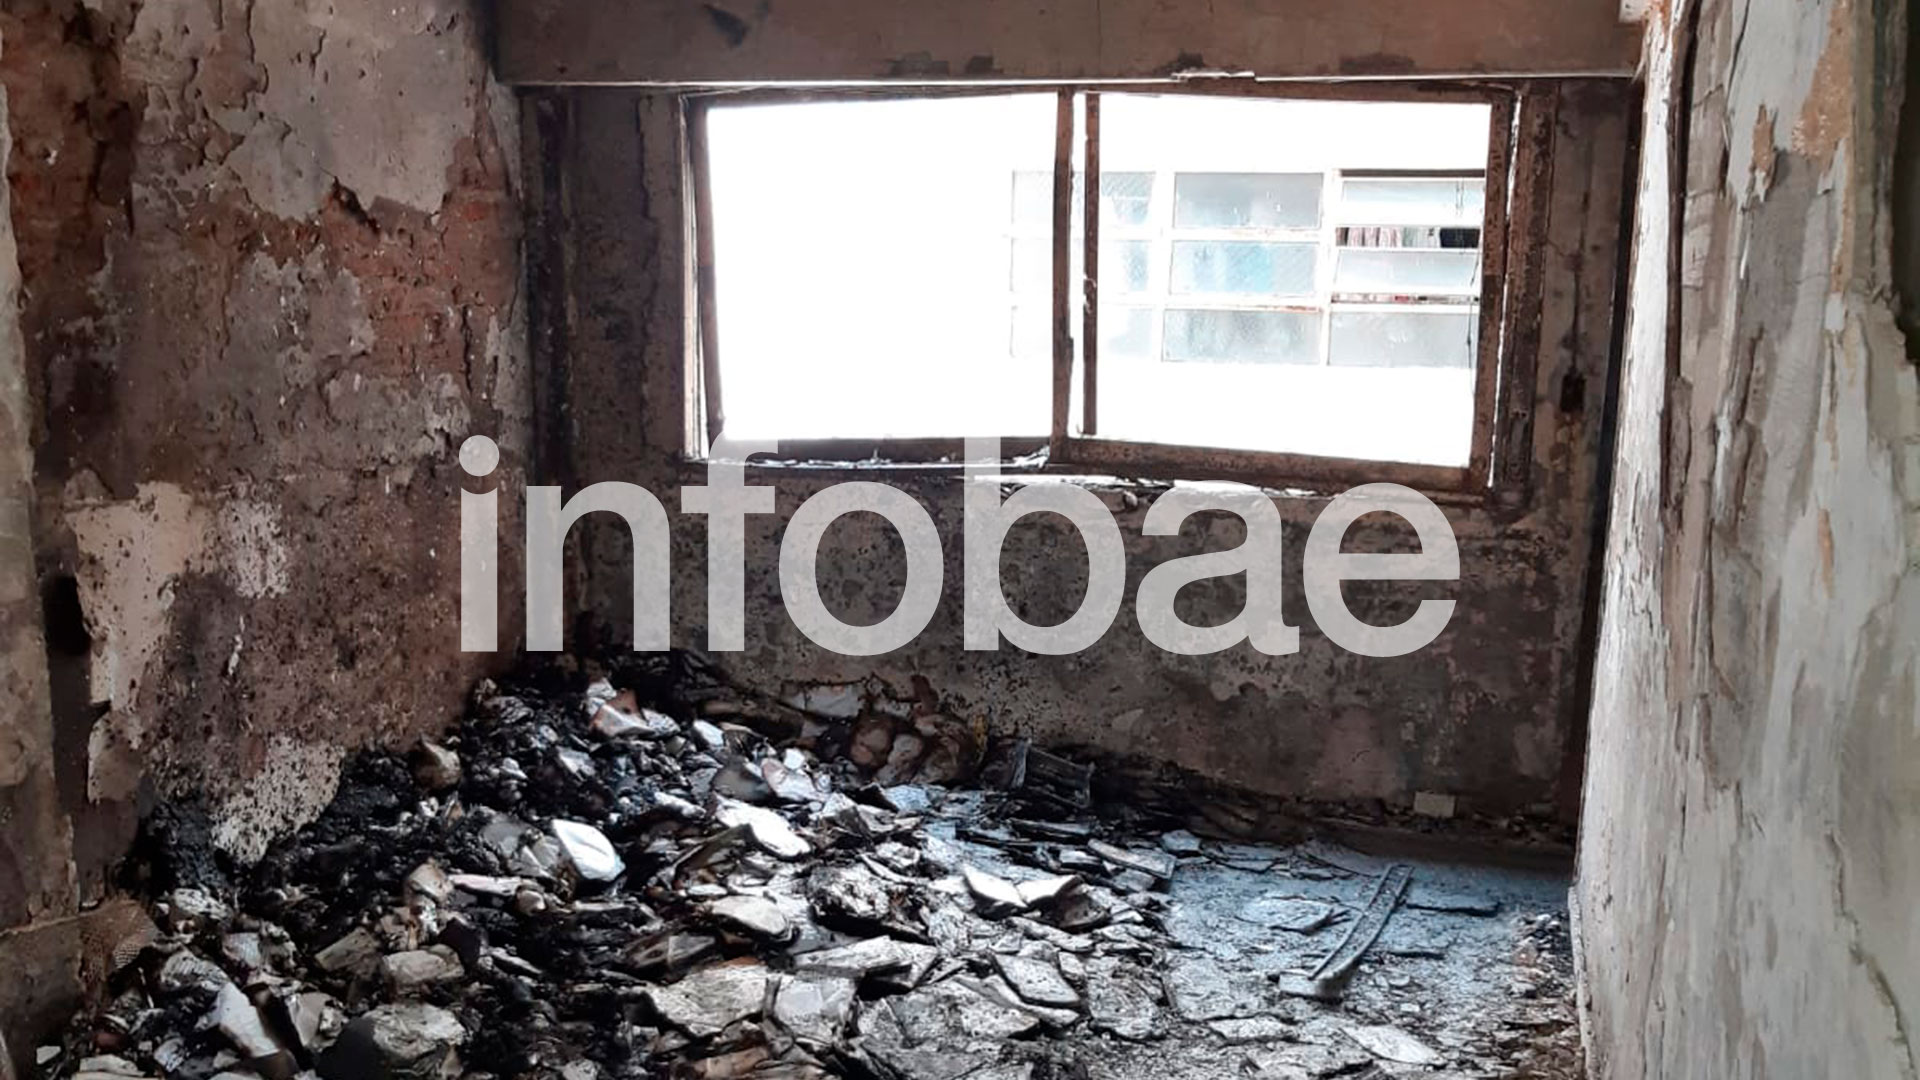 Algunos de los vecinos alcanzados por las llamas pedían auxilio a través de las ventanas, pero lamentablemente se confirmaron las muertes de cuatro menores y una mayor (Infobae)